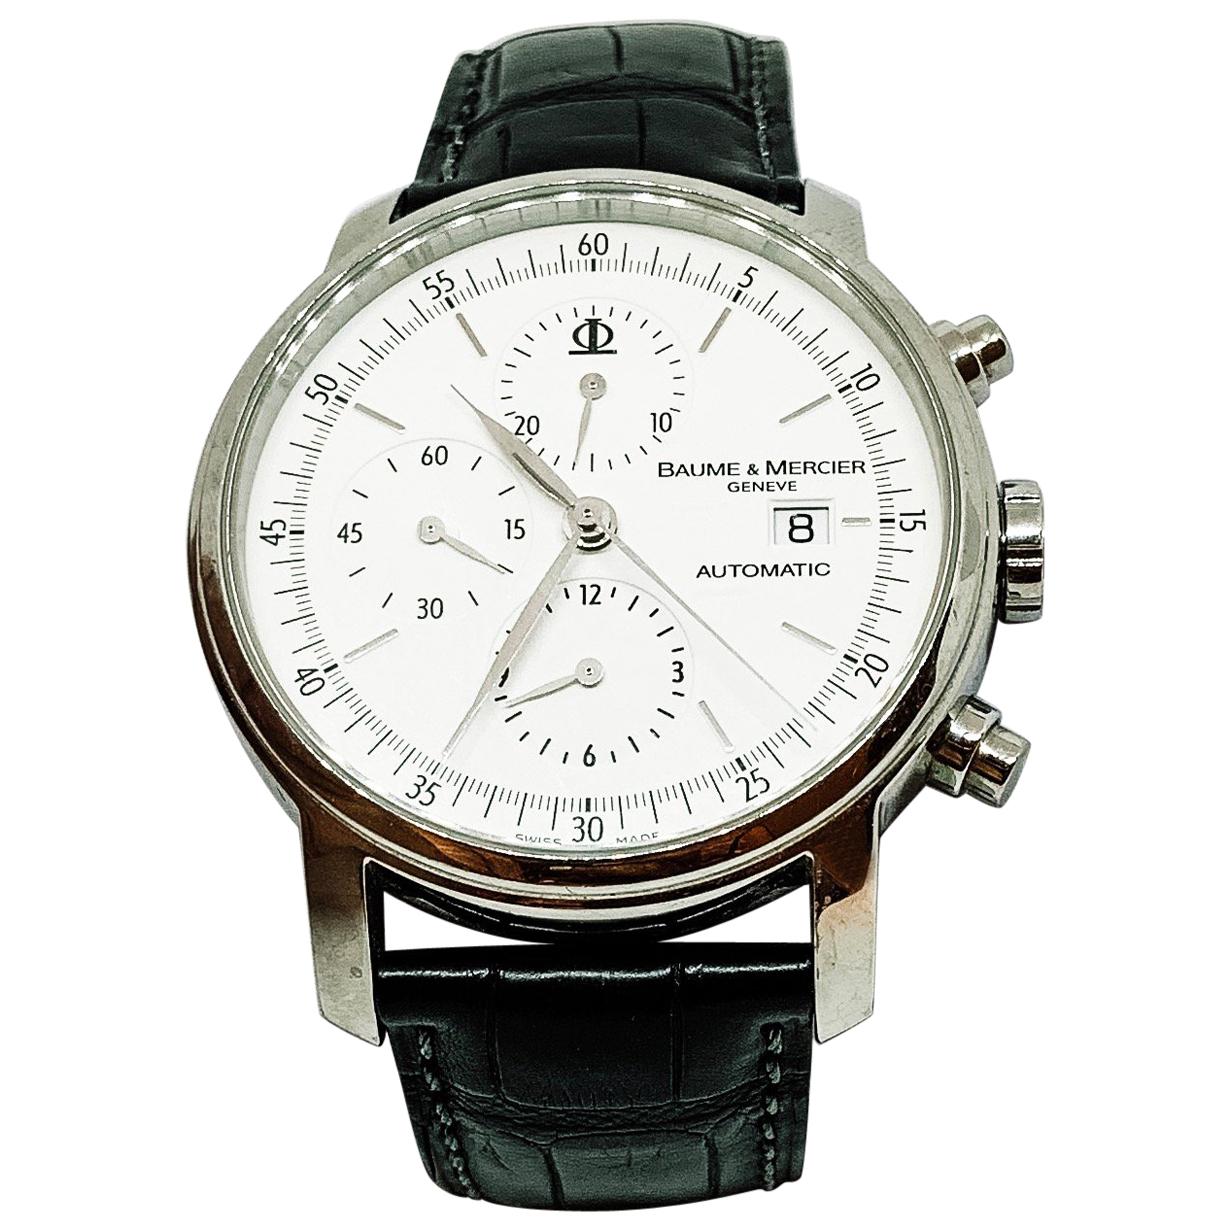 Baume & Mercier Geneve 1830 Automatic 30M Men's Watch